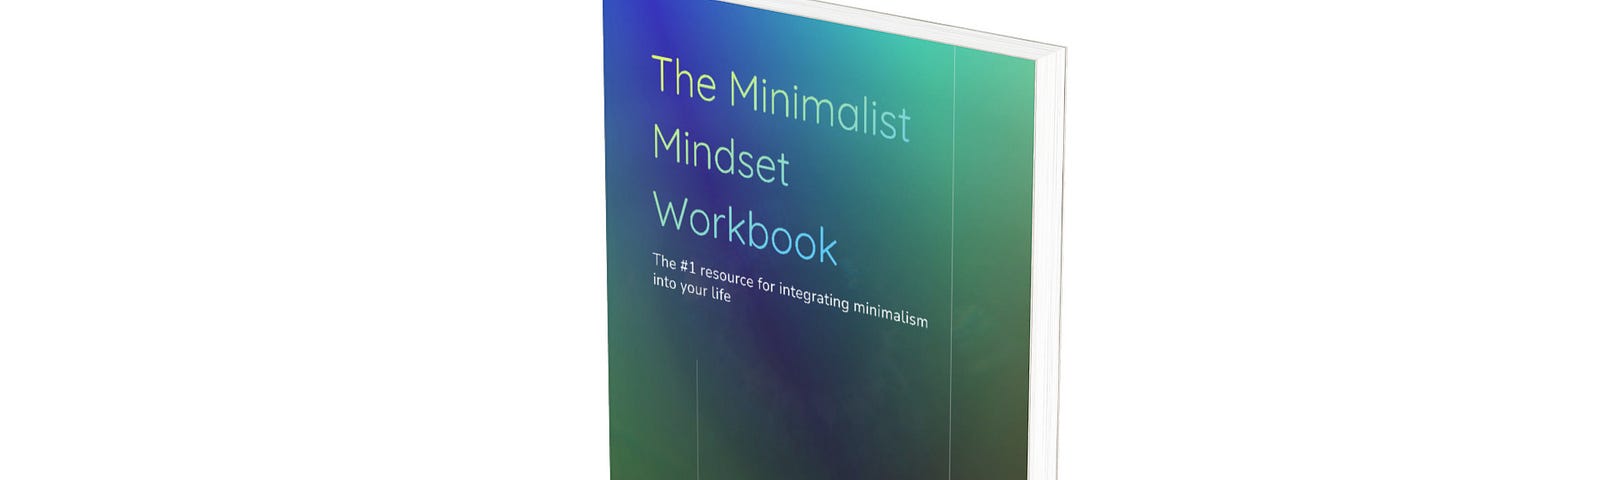 The minimalist mindset workbook